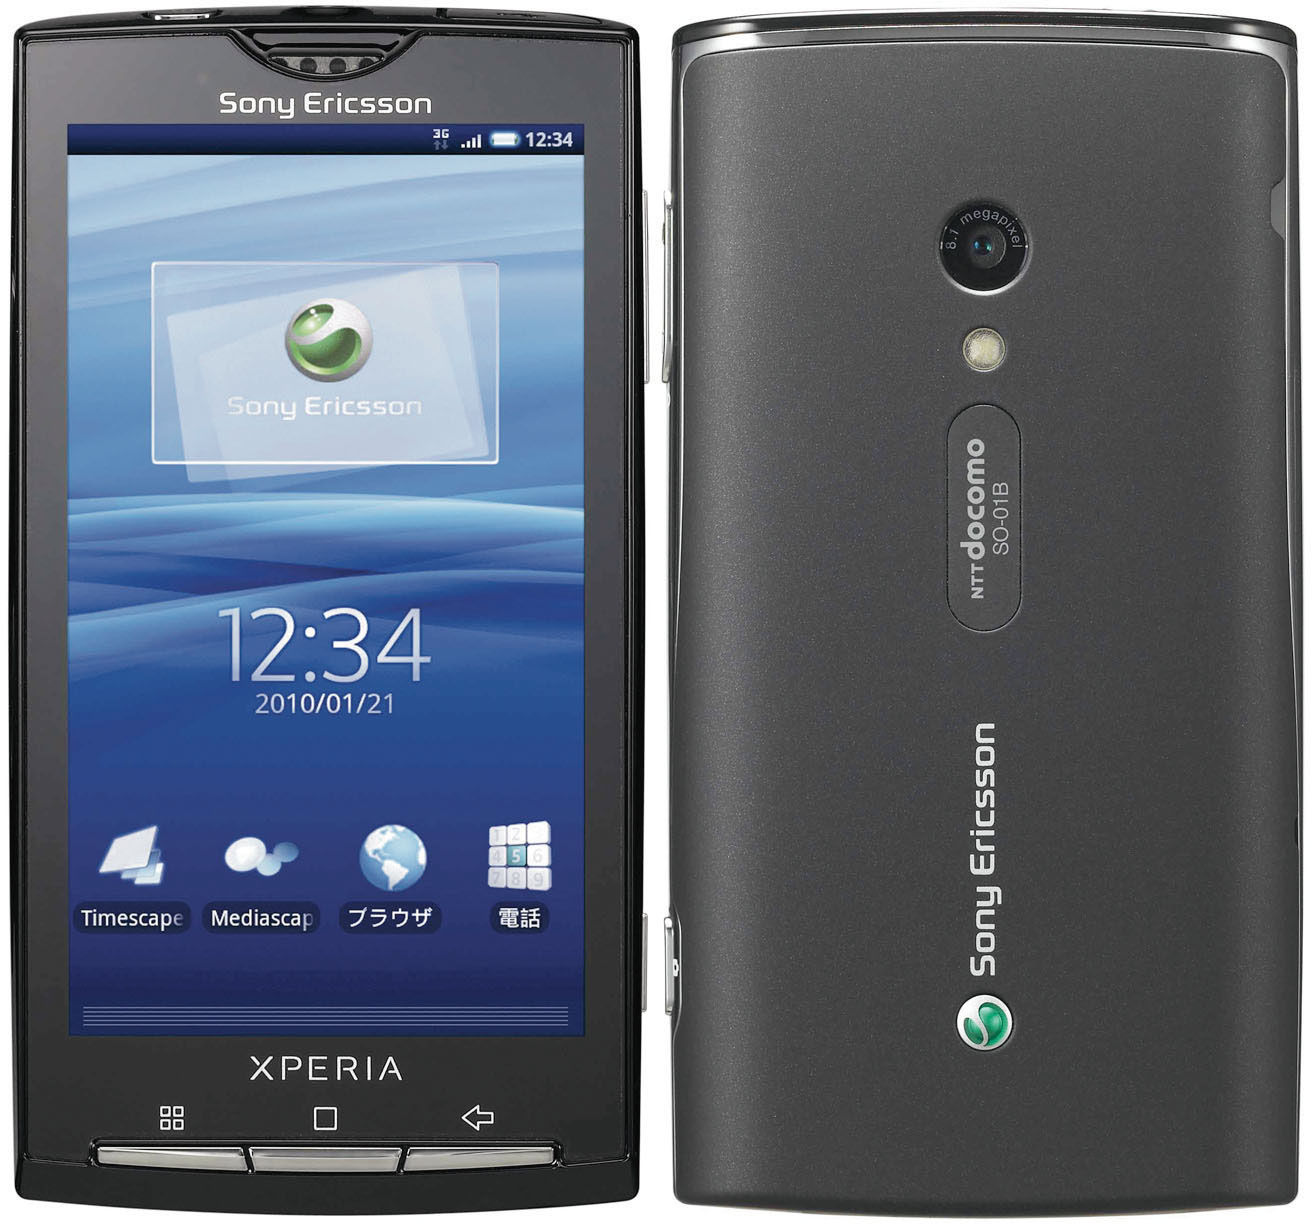 Xperia x10. Sony Ericsson Xperia one. Sony Ericsson so001. Sony Ericsson Xperia so-01b. Docomo Sony Xperia.